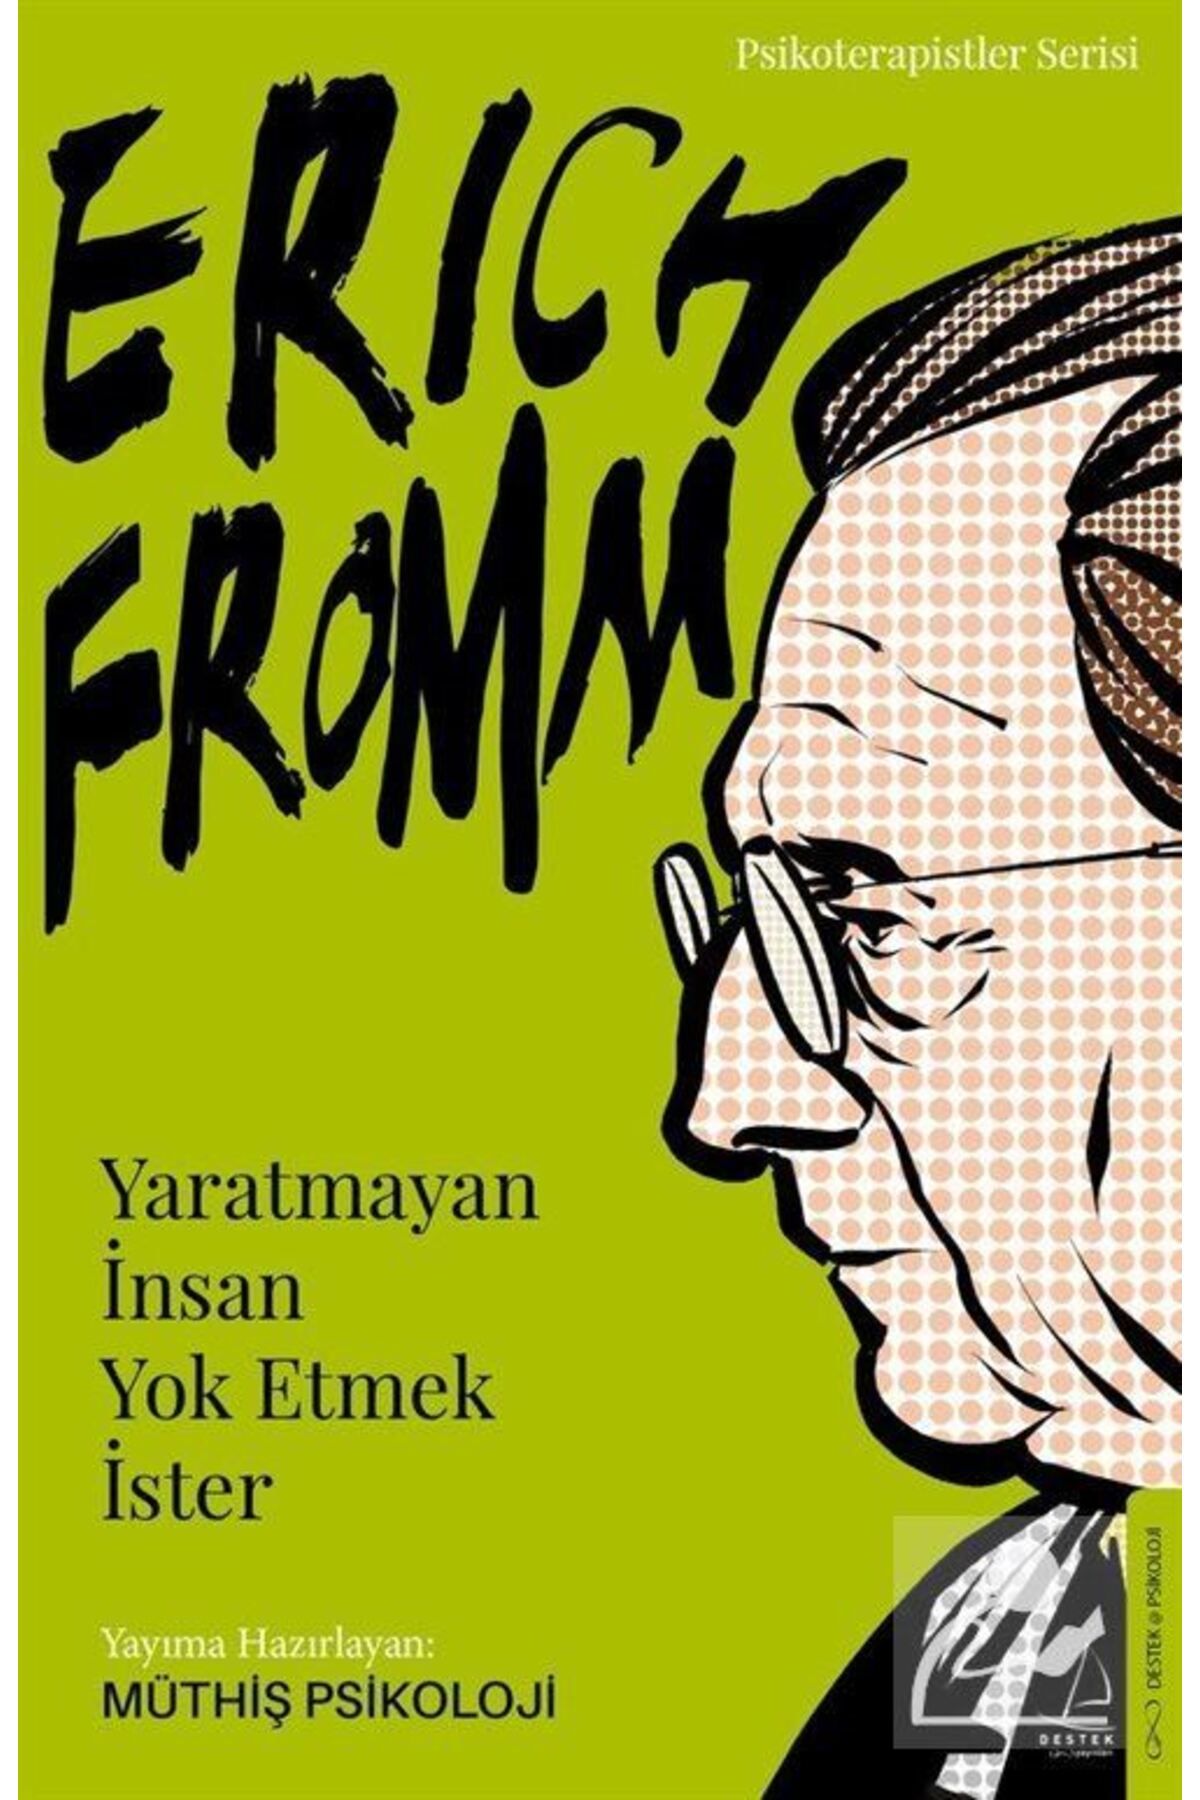 Destek Yayınları Erich Fromm - Yaratmayan Insan Yok Etmek Ister